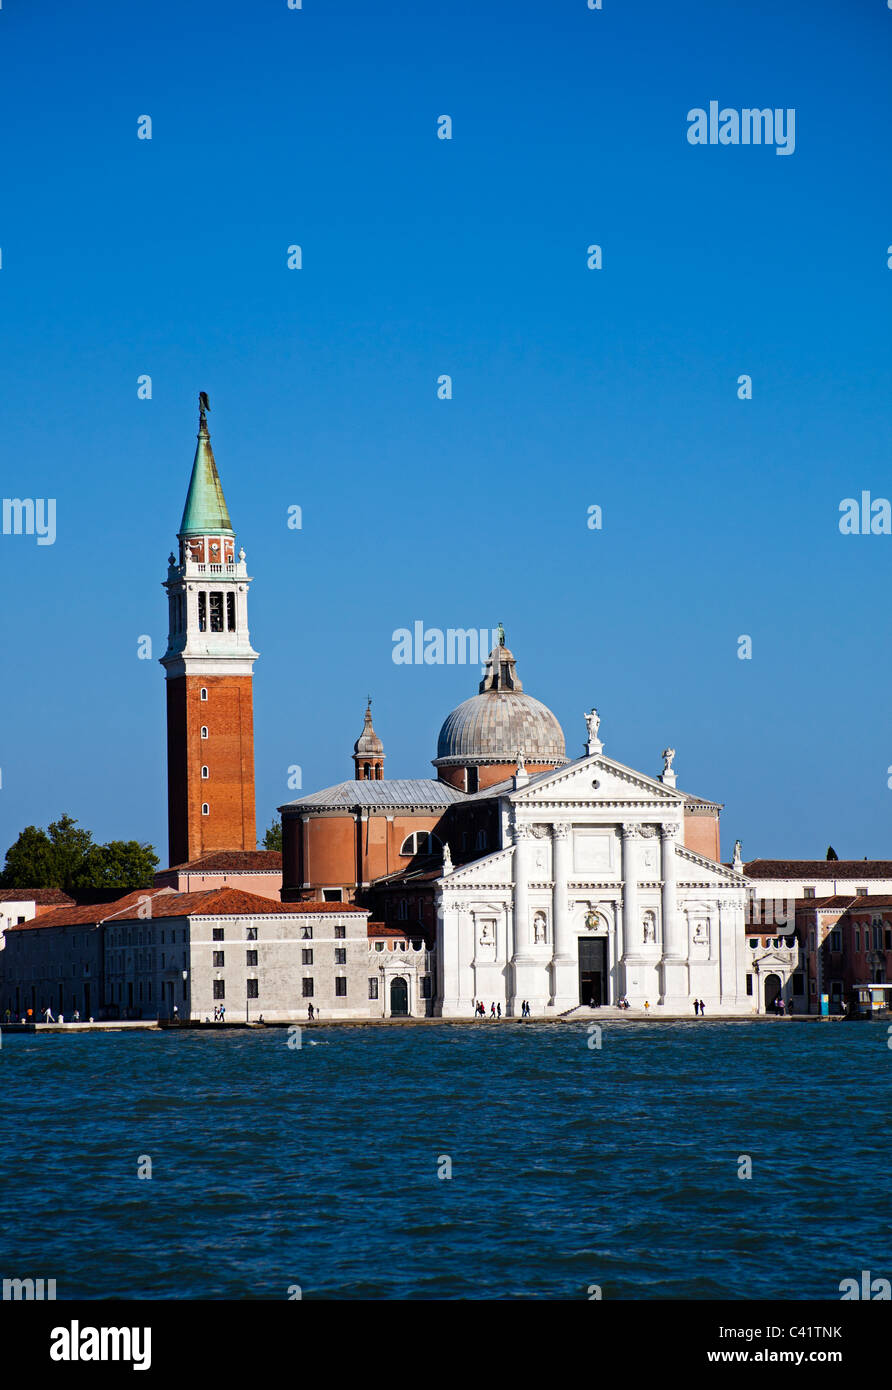 Canale di San Marco with San Giorgio Maggiore in background Italy Europe Stock Photo